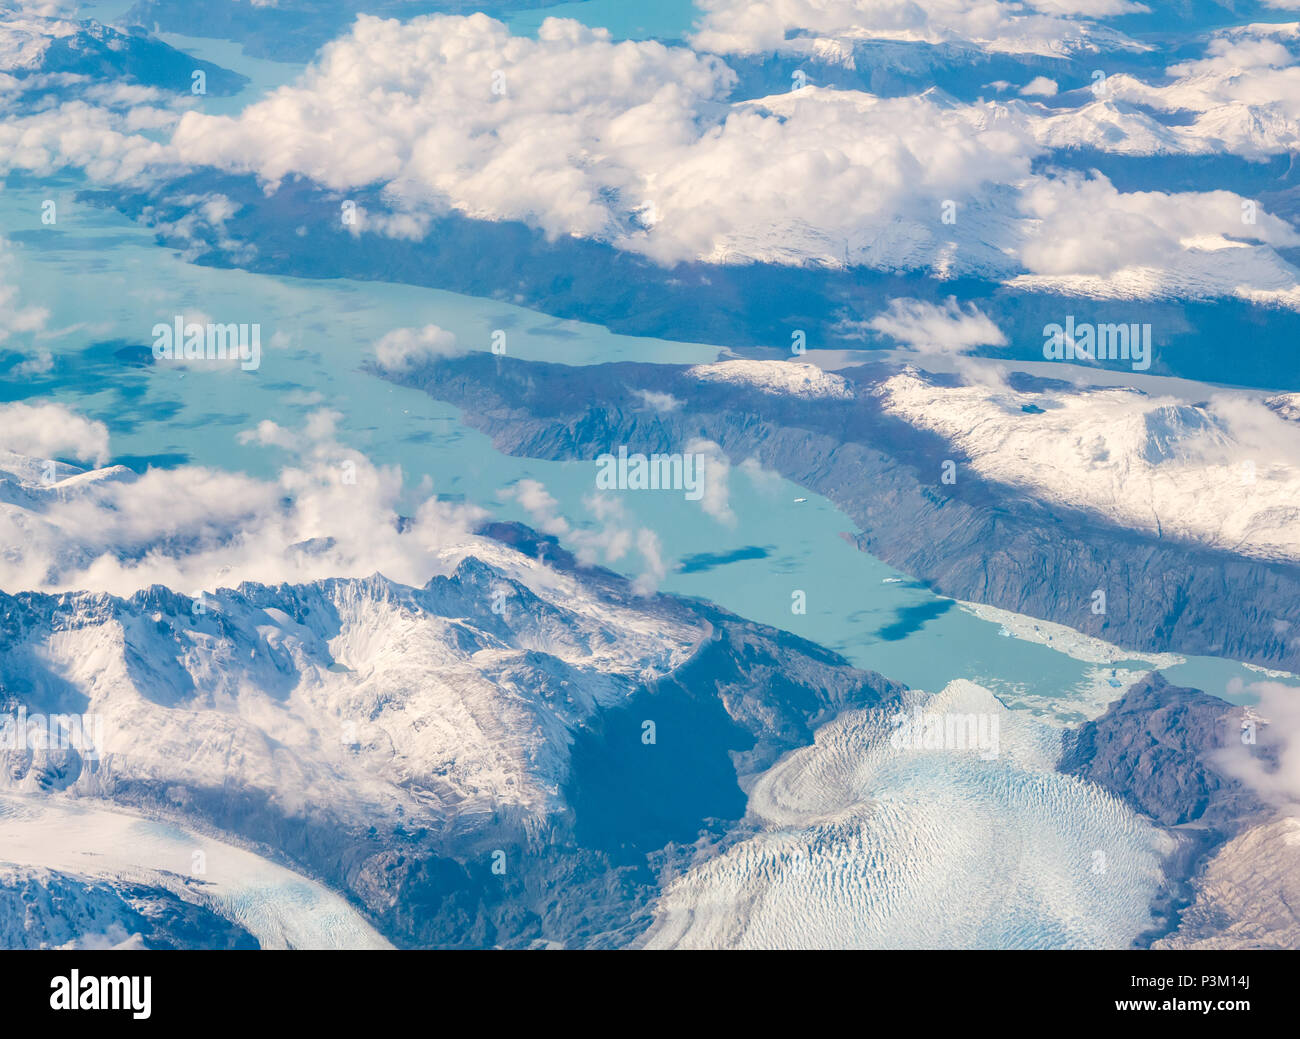 Vue depuis la fenêtre de l'avion de la neige a couvert des Andes avec des lacs, des glaciers et des icebergs, le sud de la langue de glace de la Patagonie, la Patagonie, Chili Banque D'Images